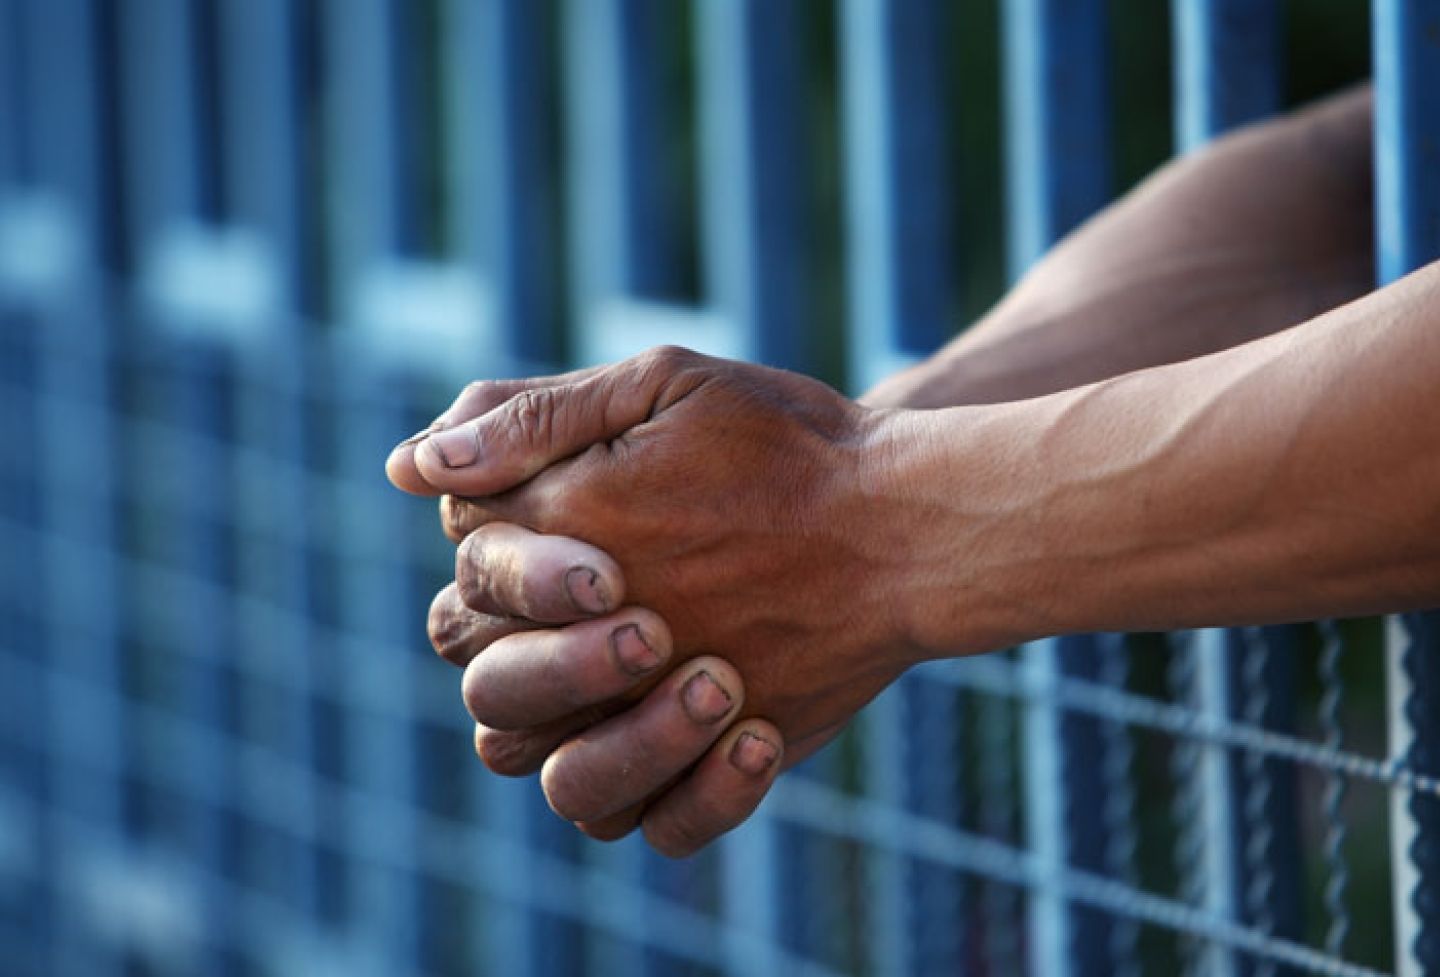 Hands in jail